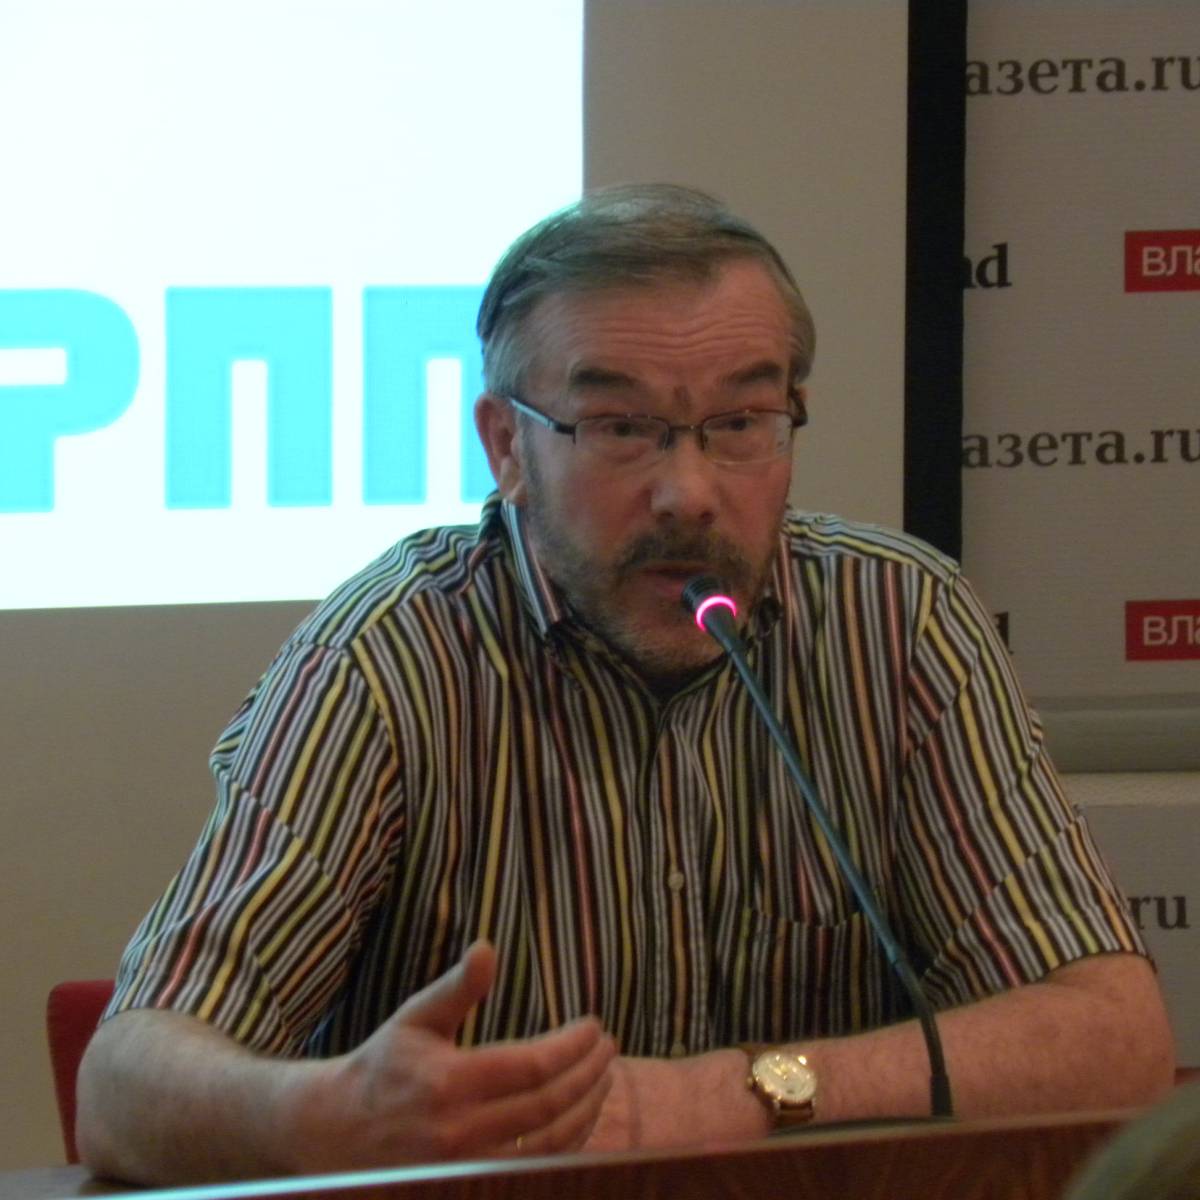 Игорь Мосин: «Либеральная модель прессы оказалась неэффективна»